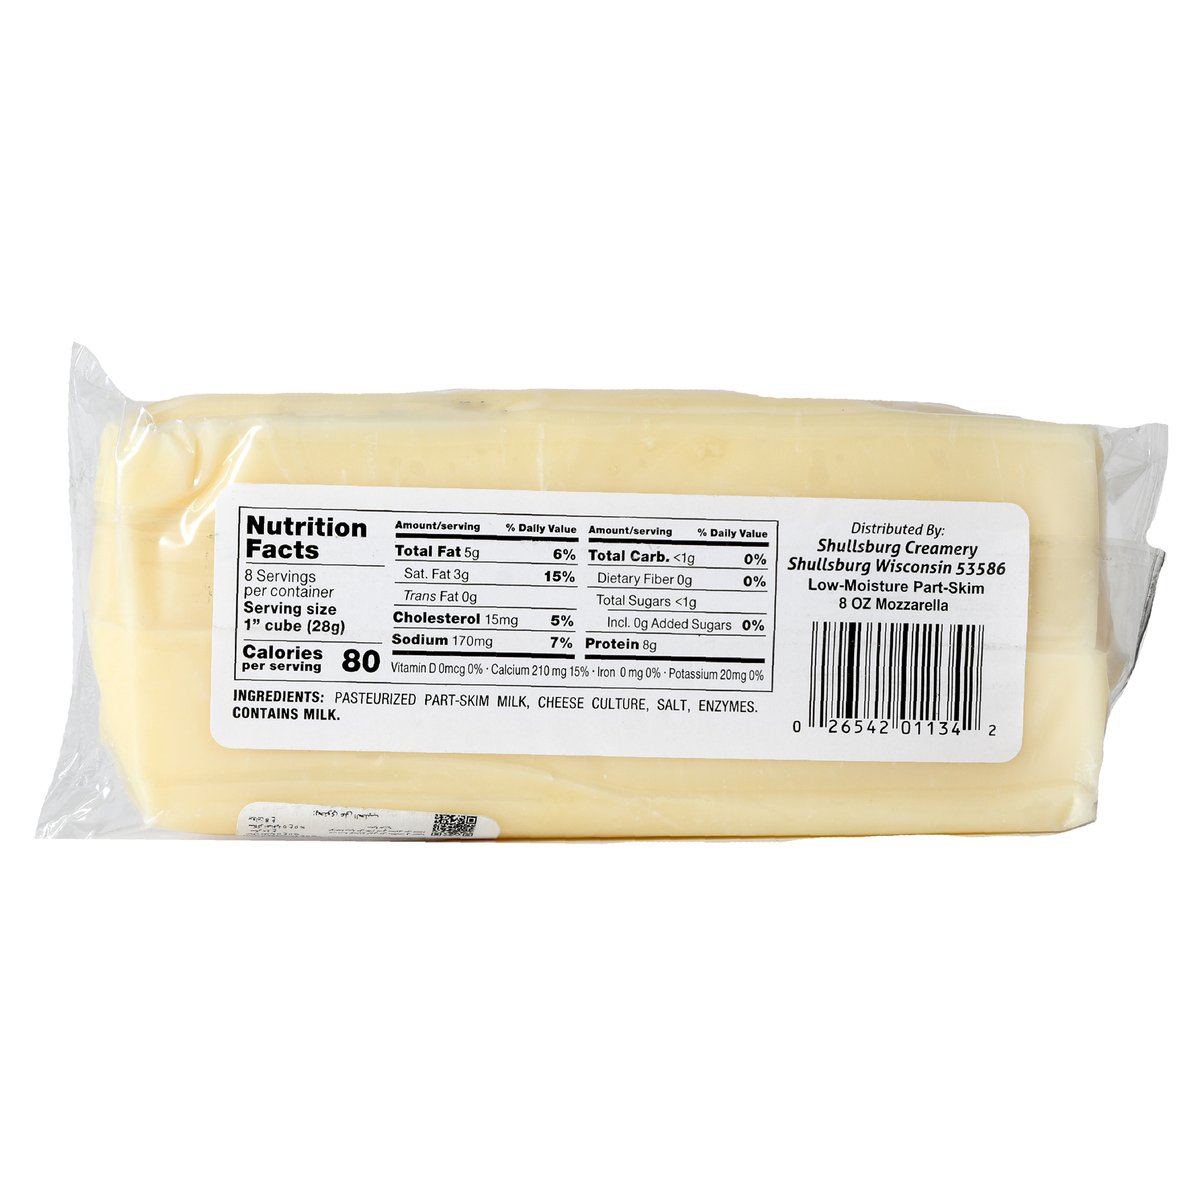 Shullsburg Creamery Mozzarella Cheese 227 g